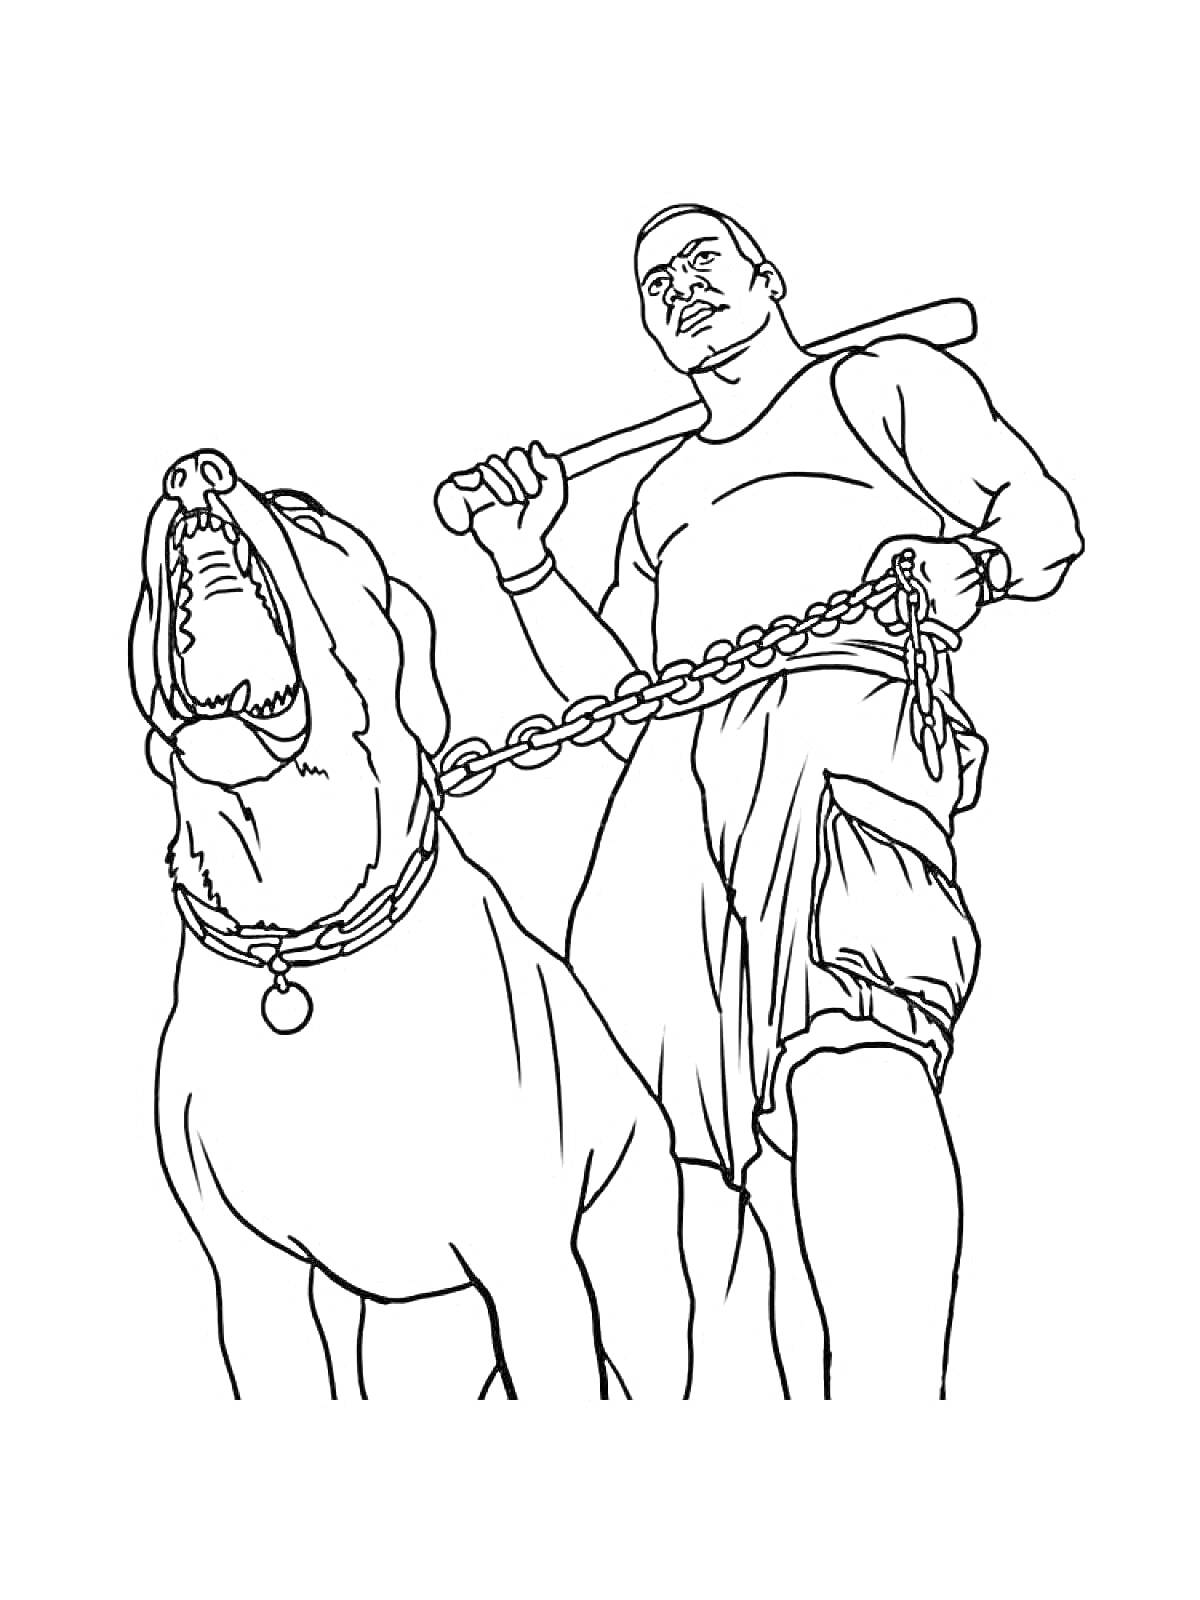 Раскраска Мужчина с бейсбольной битой и огромной собакой на цепи